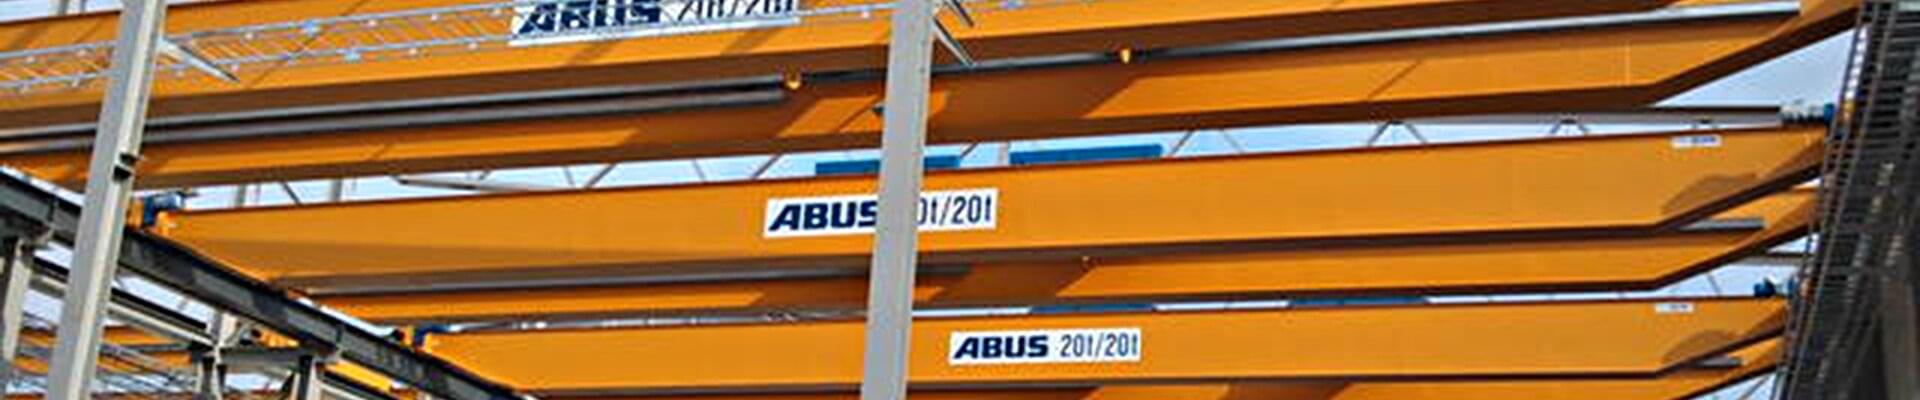 ABUS-bilkran med en lastkapacitet på 20 ton och 20 ton i en produktionshall för stålkonstruktioner i Sverige